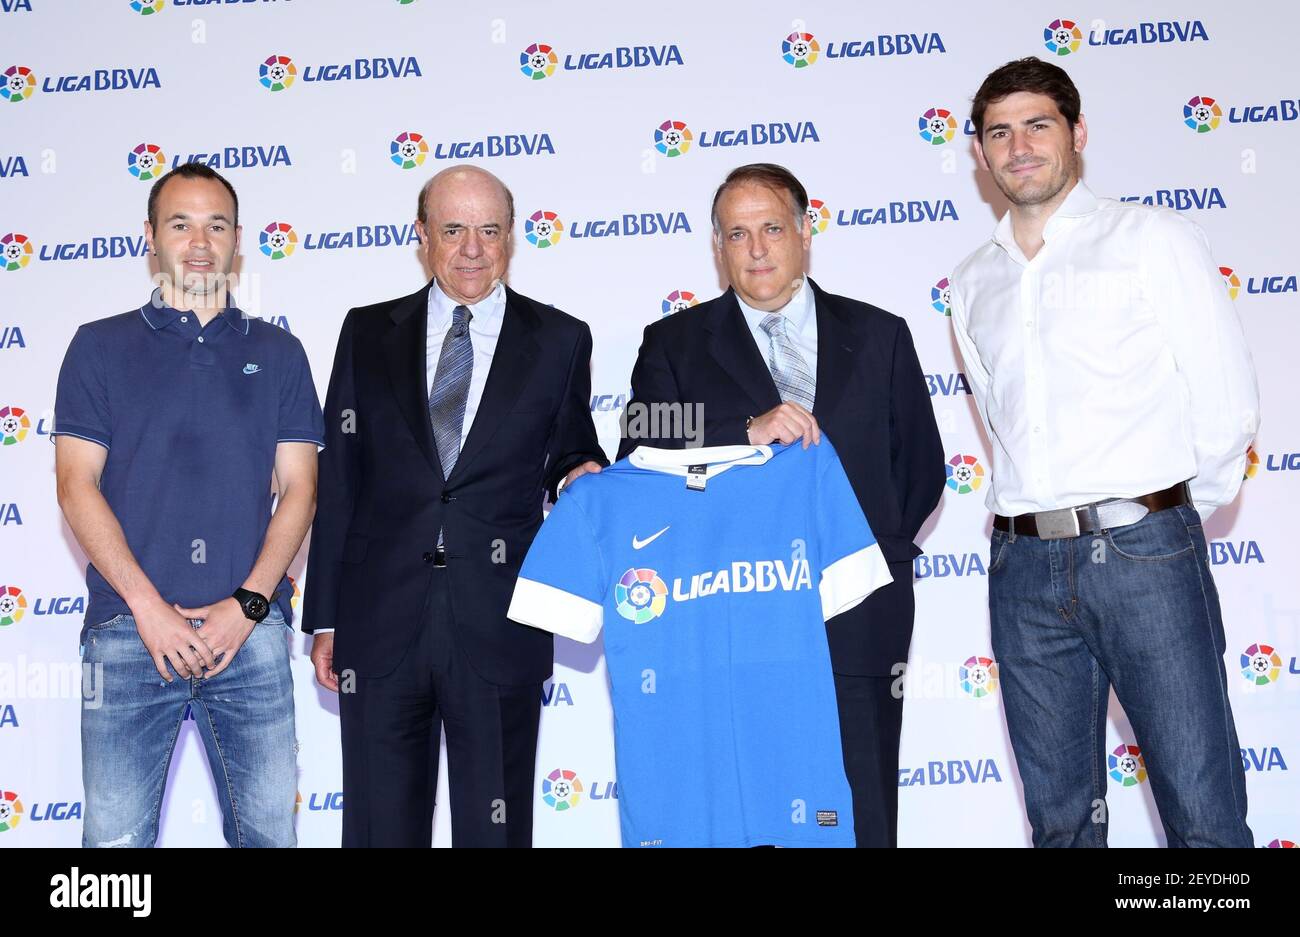 Andrés Iniesta, Francisco Gonzales, Tebas, Iker BBVA y la Liga Española de Fútbol (LFP) han hoy una ampliación de su acuerdo estratégico. La primera división seguirá siendo conocida